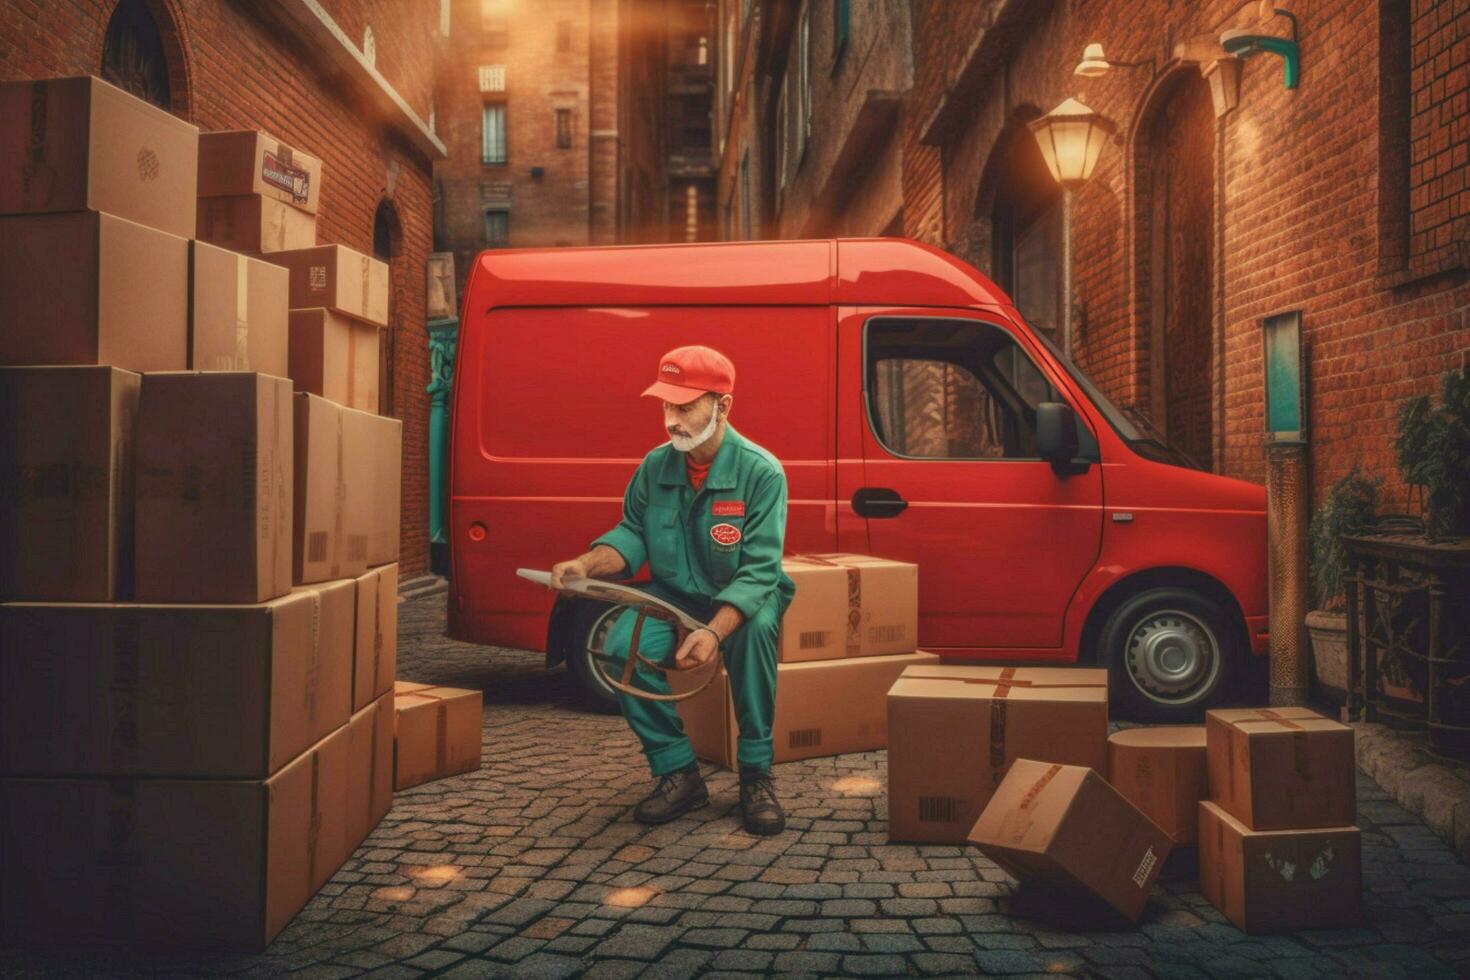 un entrega hombre es cargando cajas dentro un camioneta foto